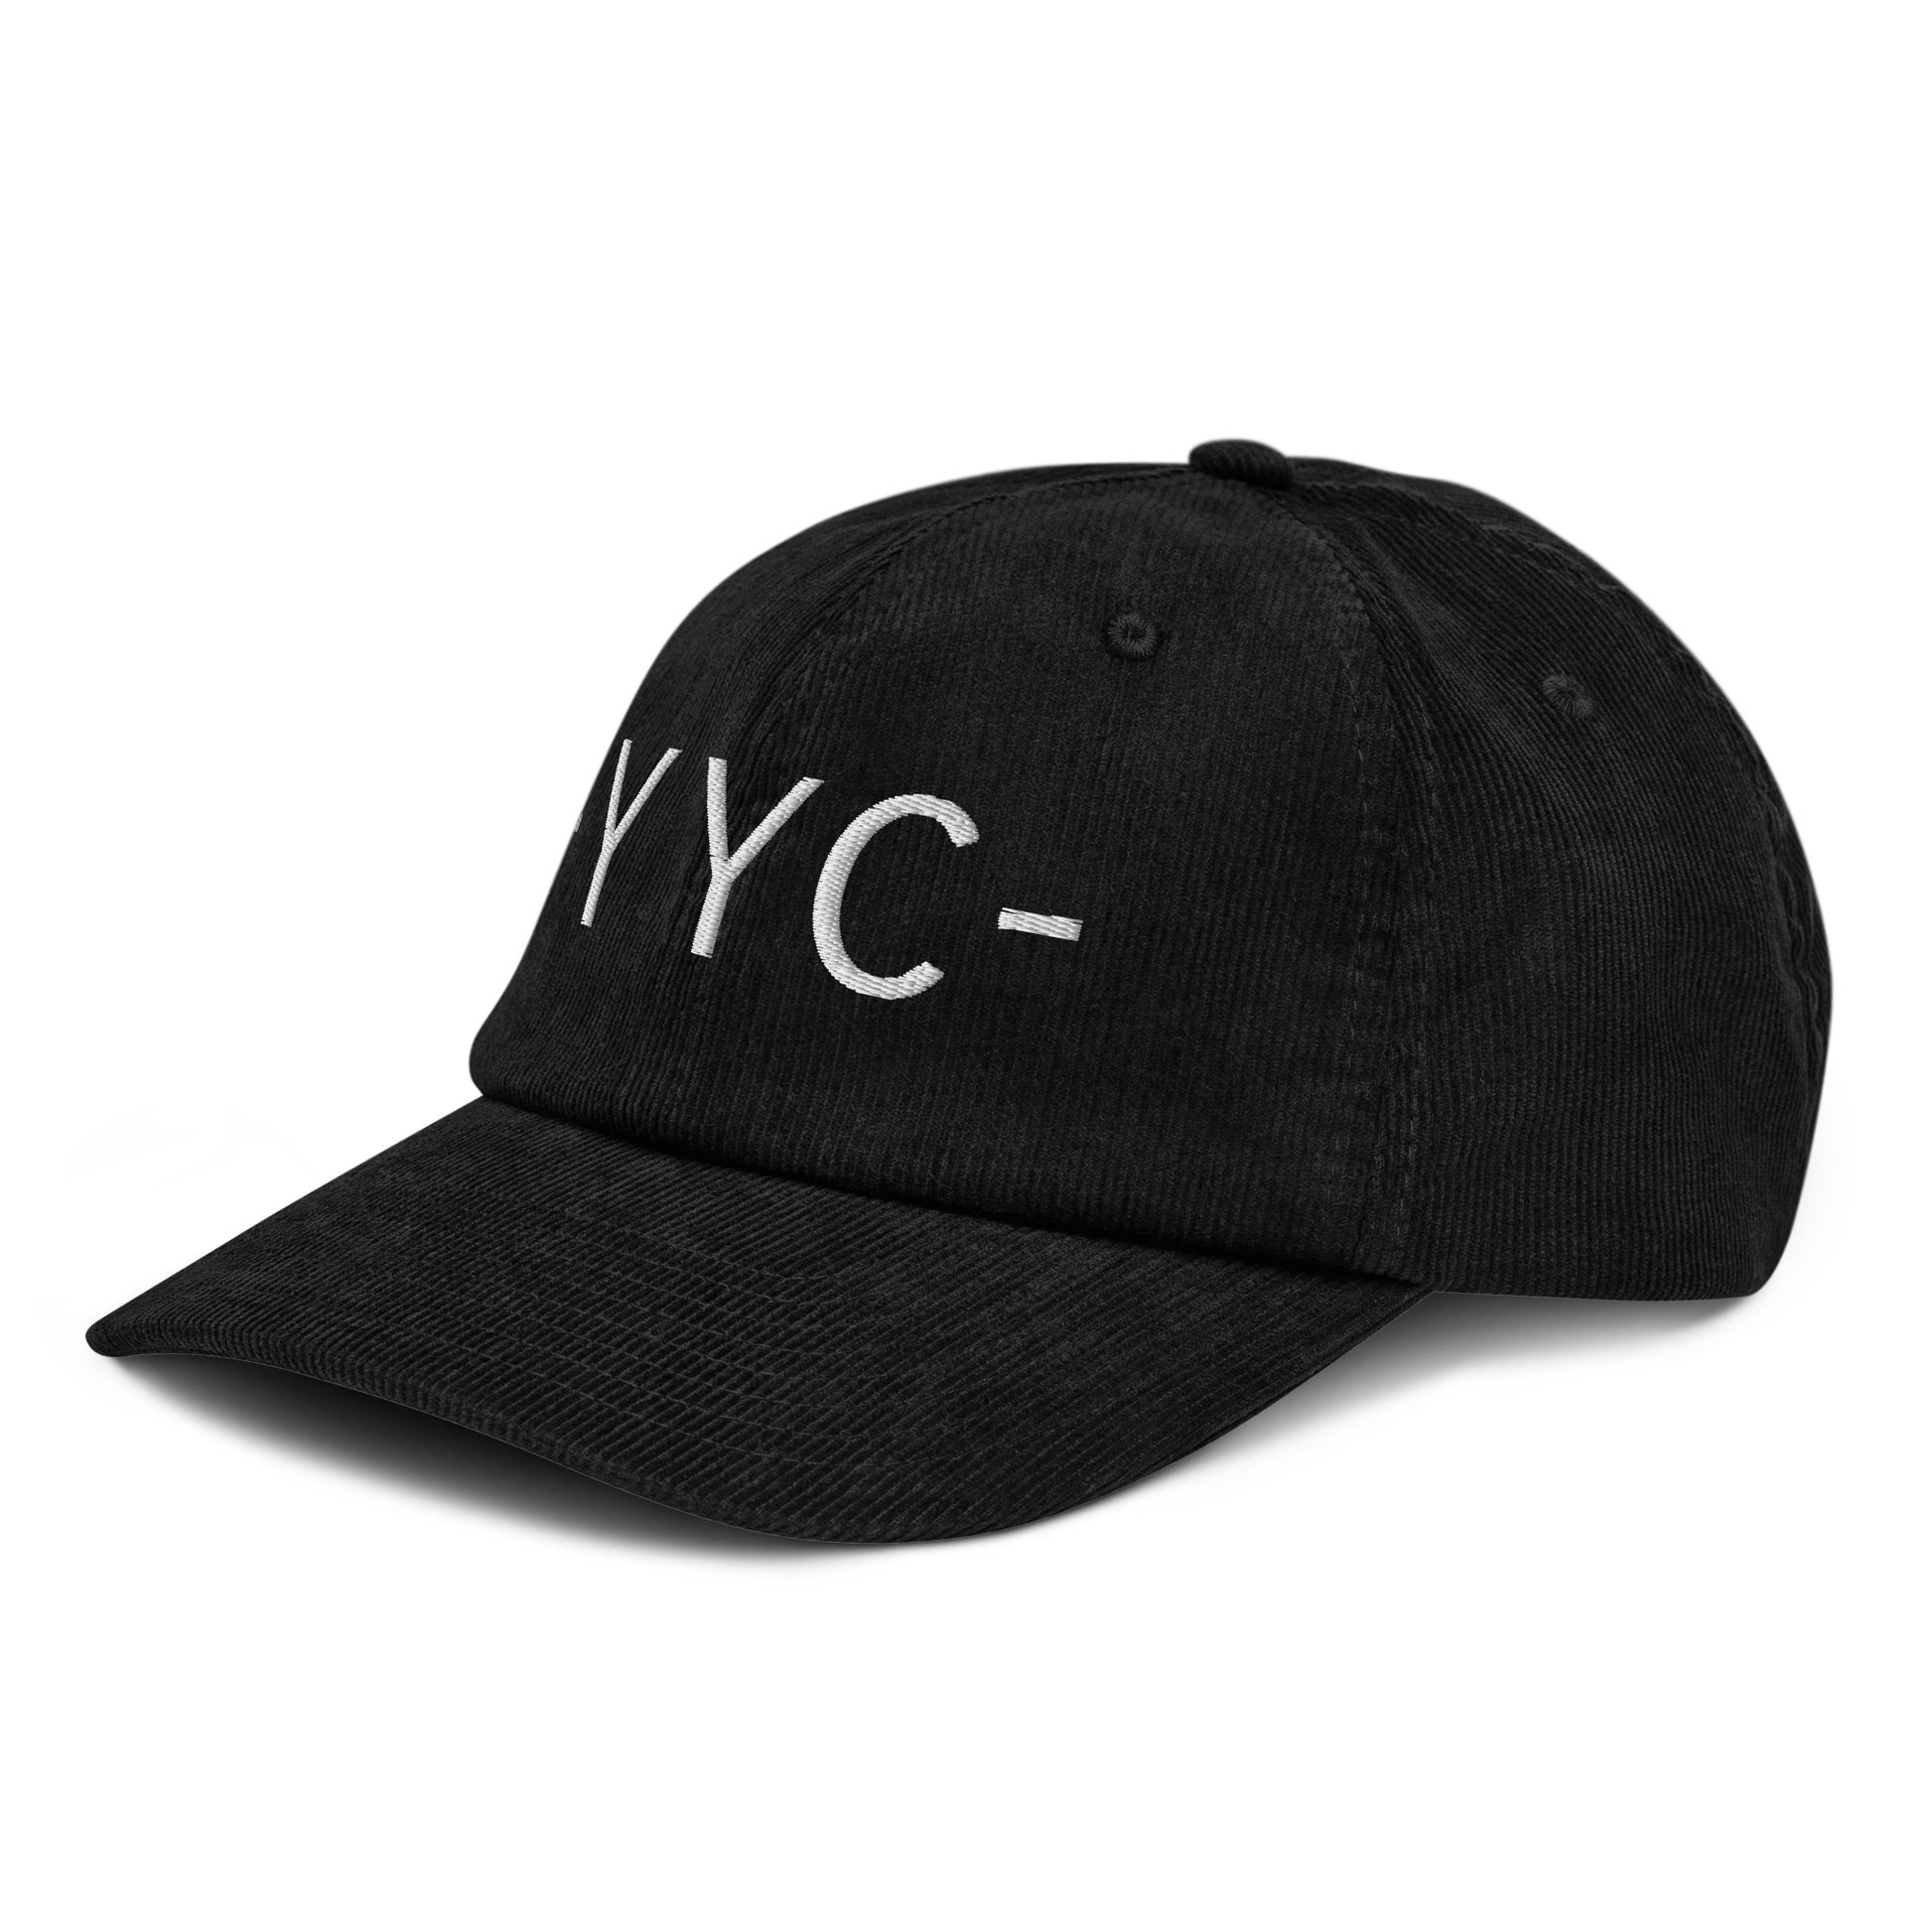 Souvenir Corduroy Hat - White • YYC Calgary • YHM Designs - Image 14